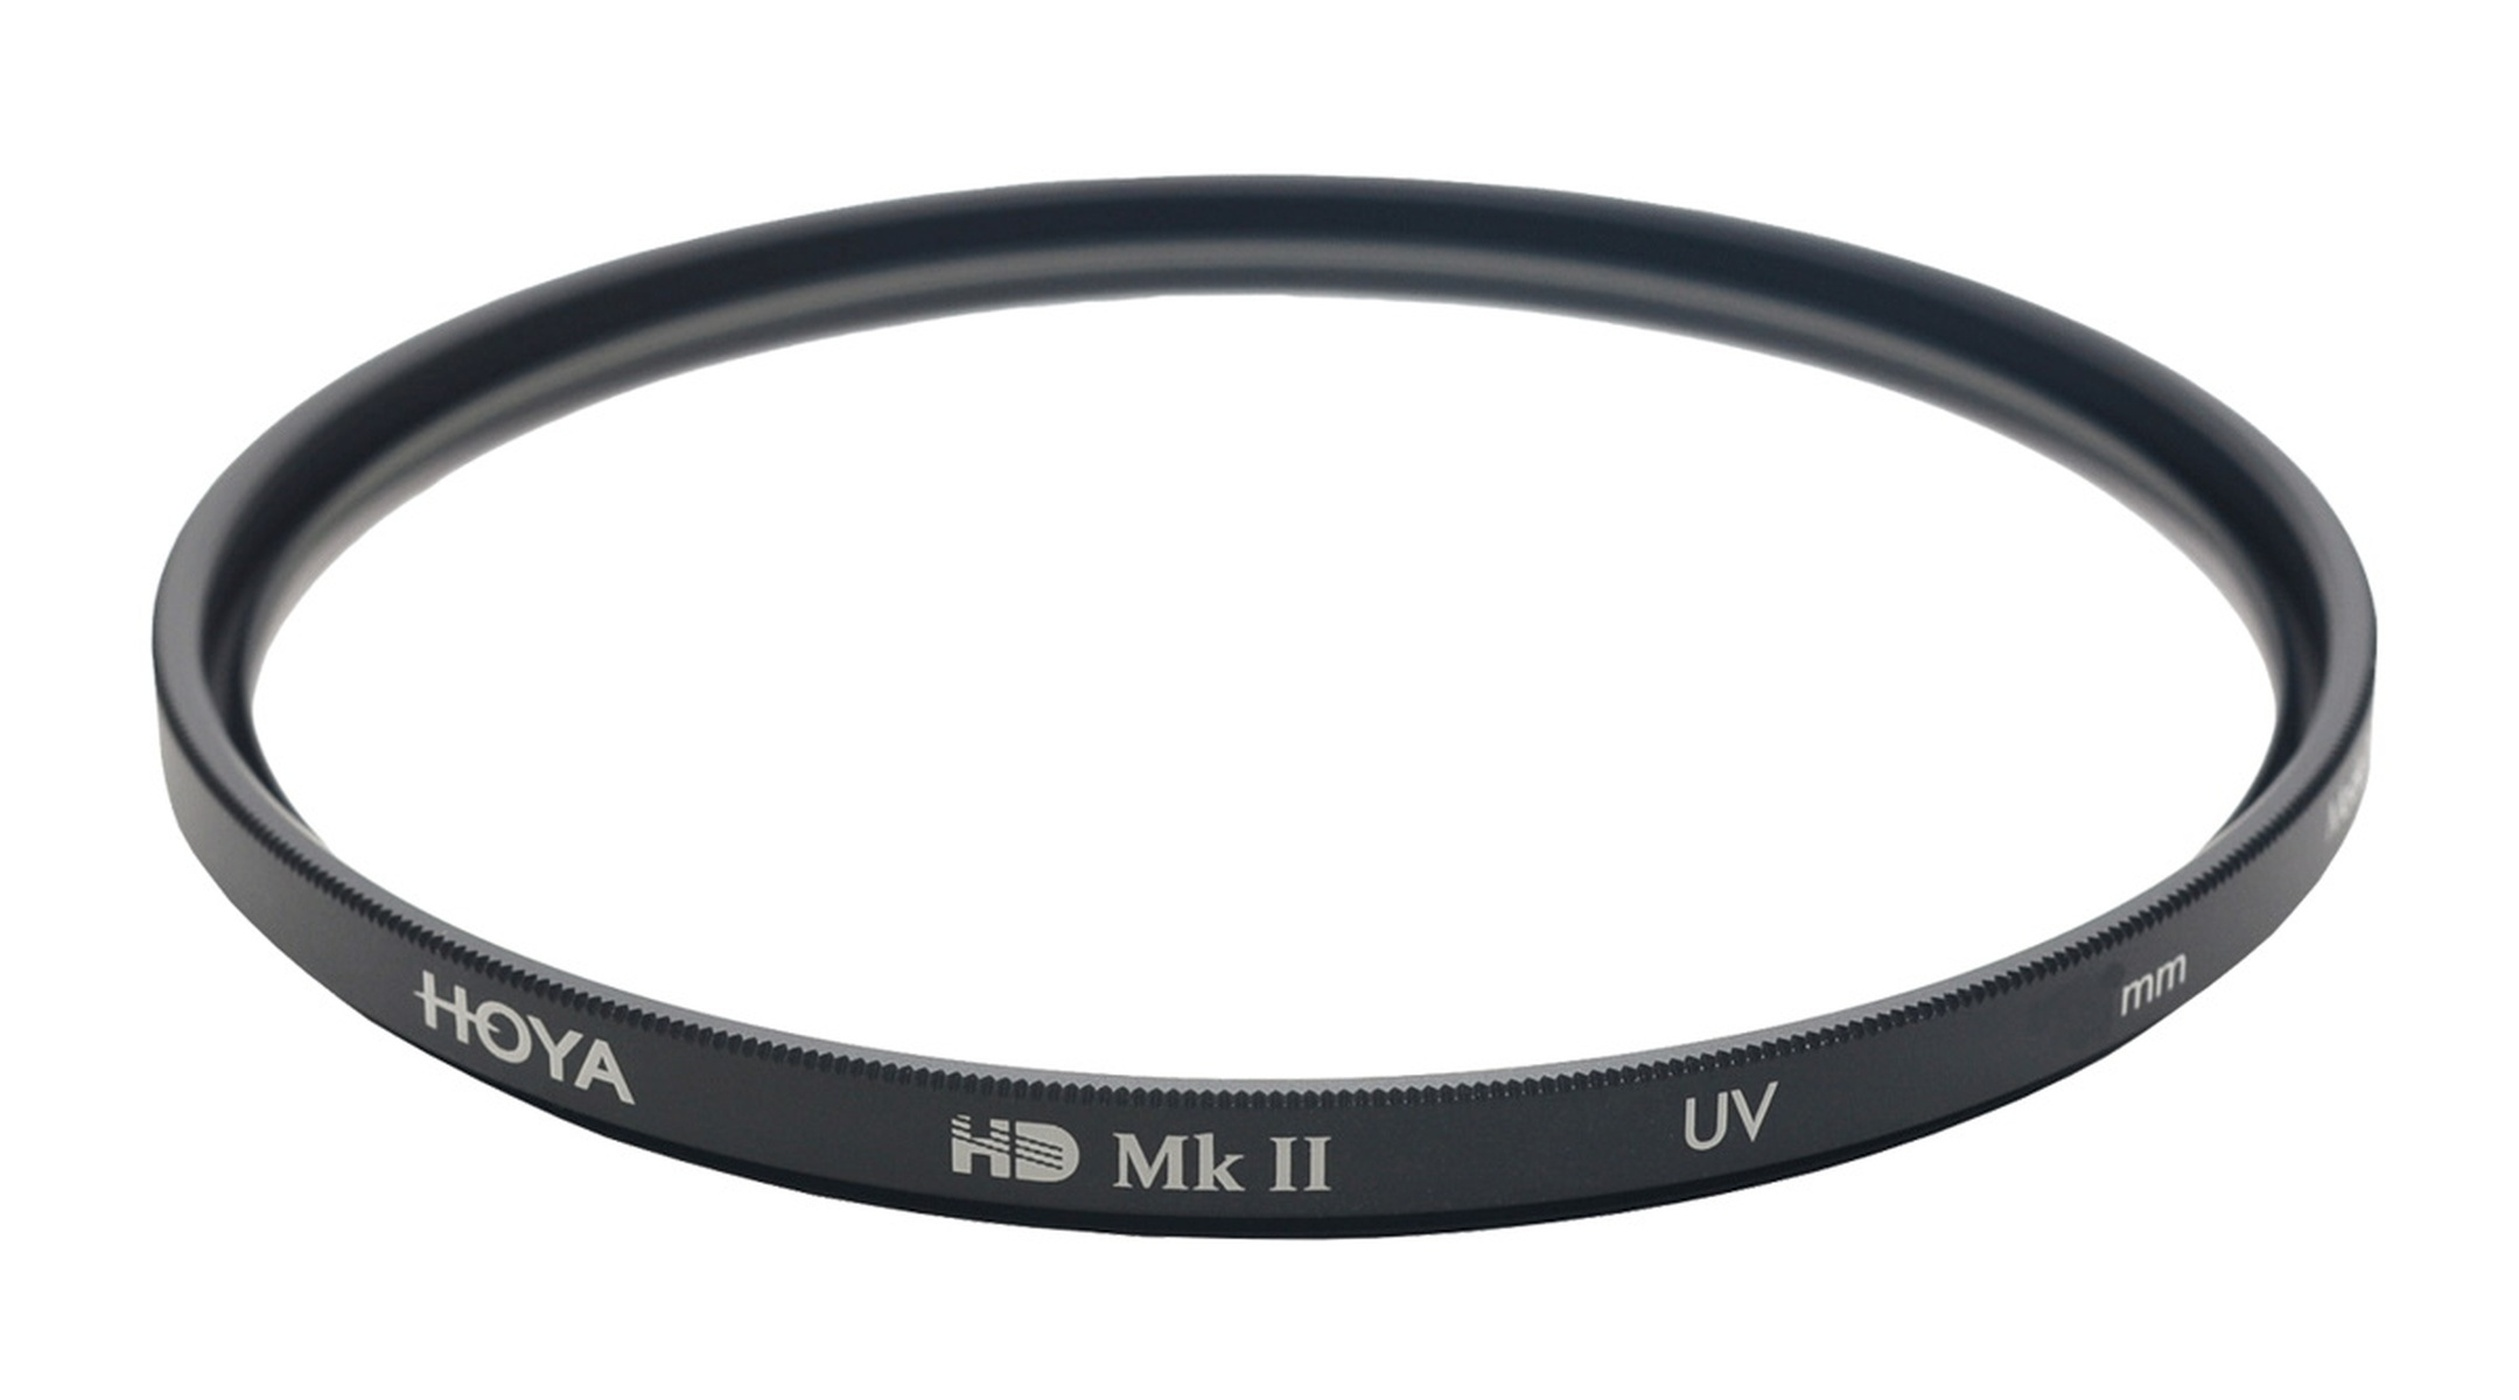 HOYA HD UV MkII Filter 49mm Filter mm 49 UV